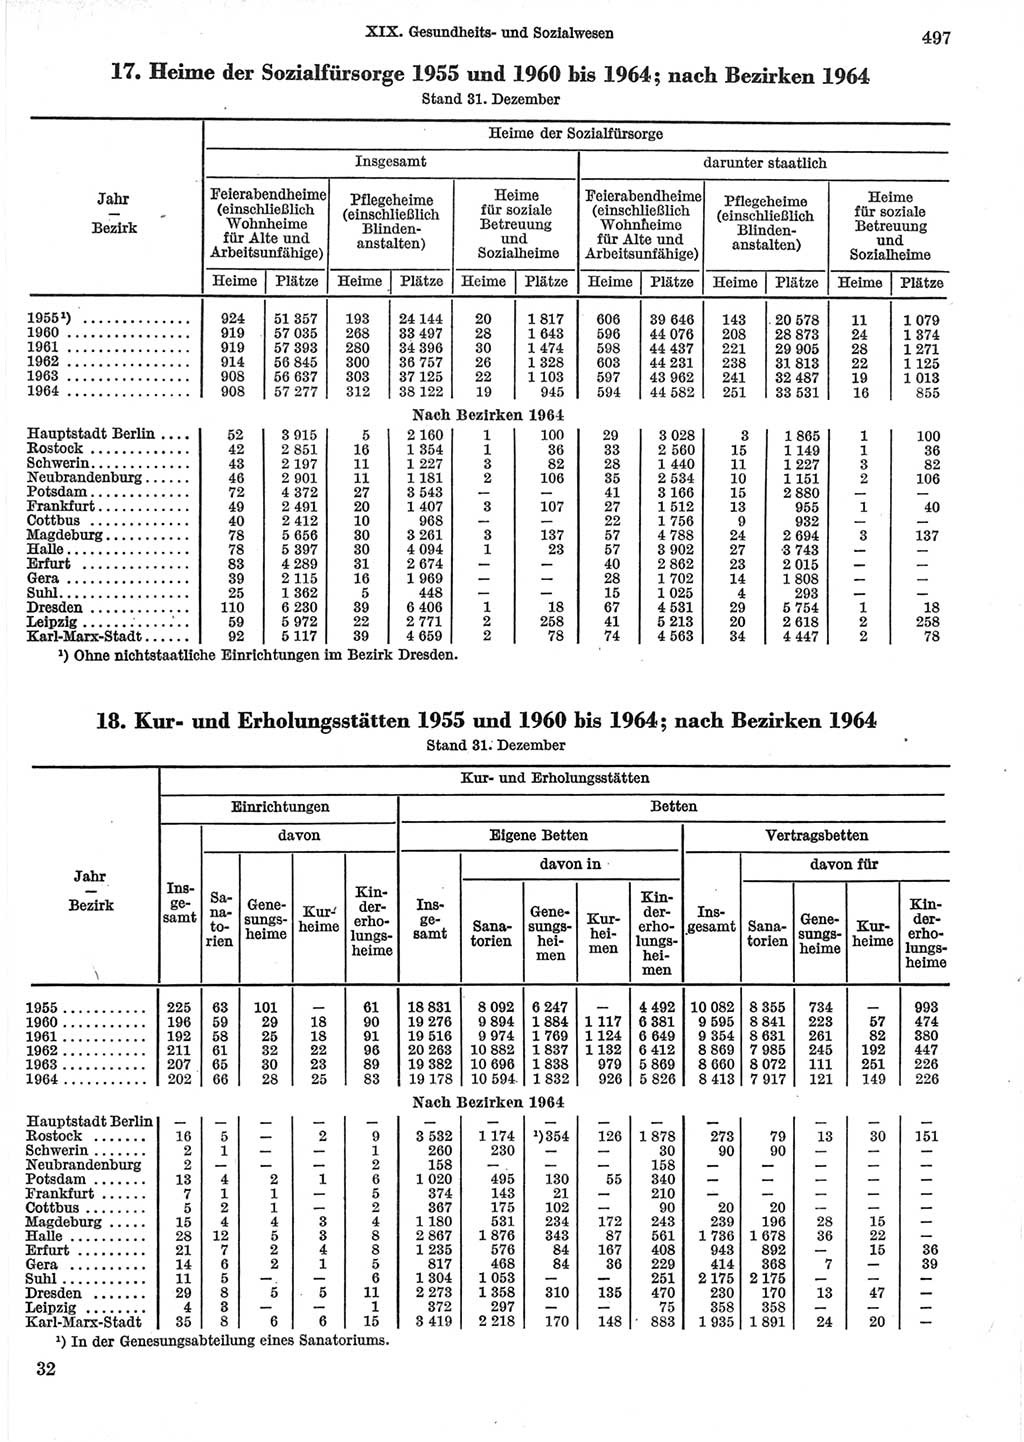 Statistisches Jahrbuch der Deutschen Demokratischen Republik (DDR) 1965, Seite 497 (Stat. Jb. DDR 1965, S. 497)